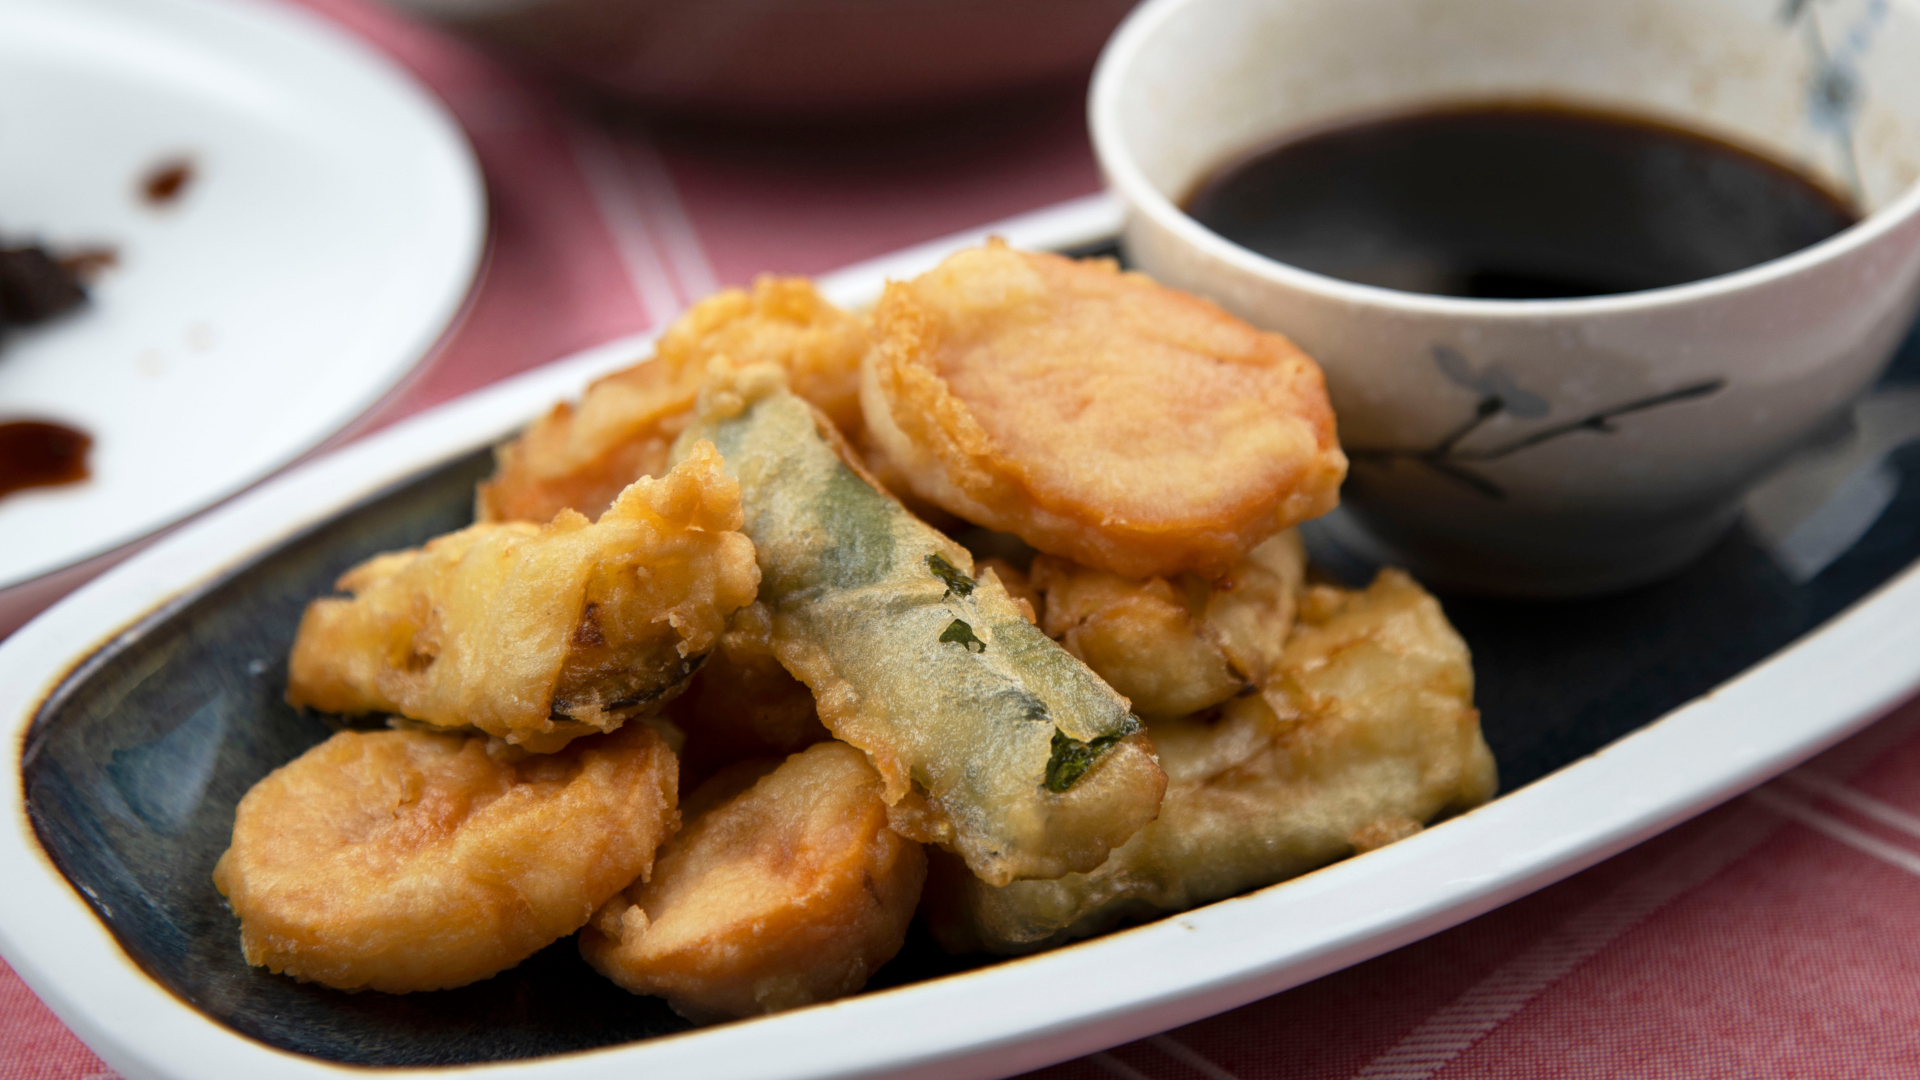 Sweet potato and zucchini tempura